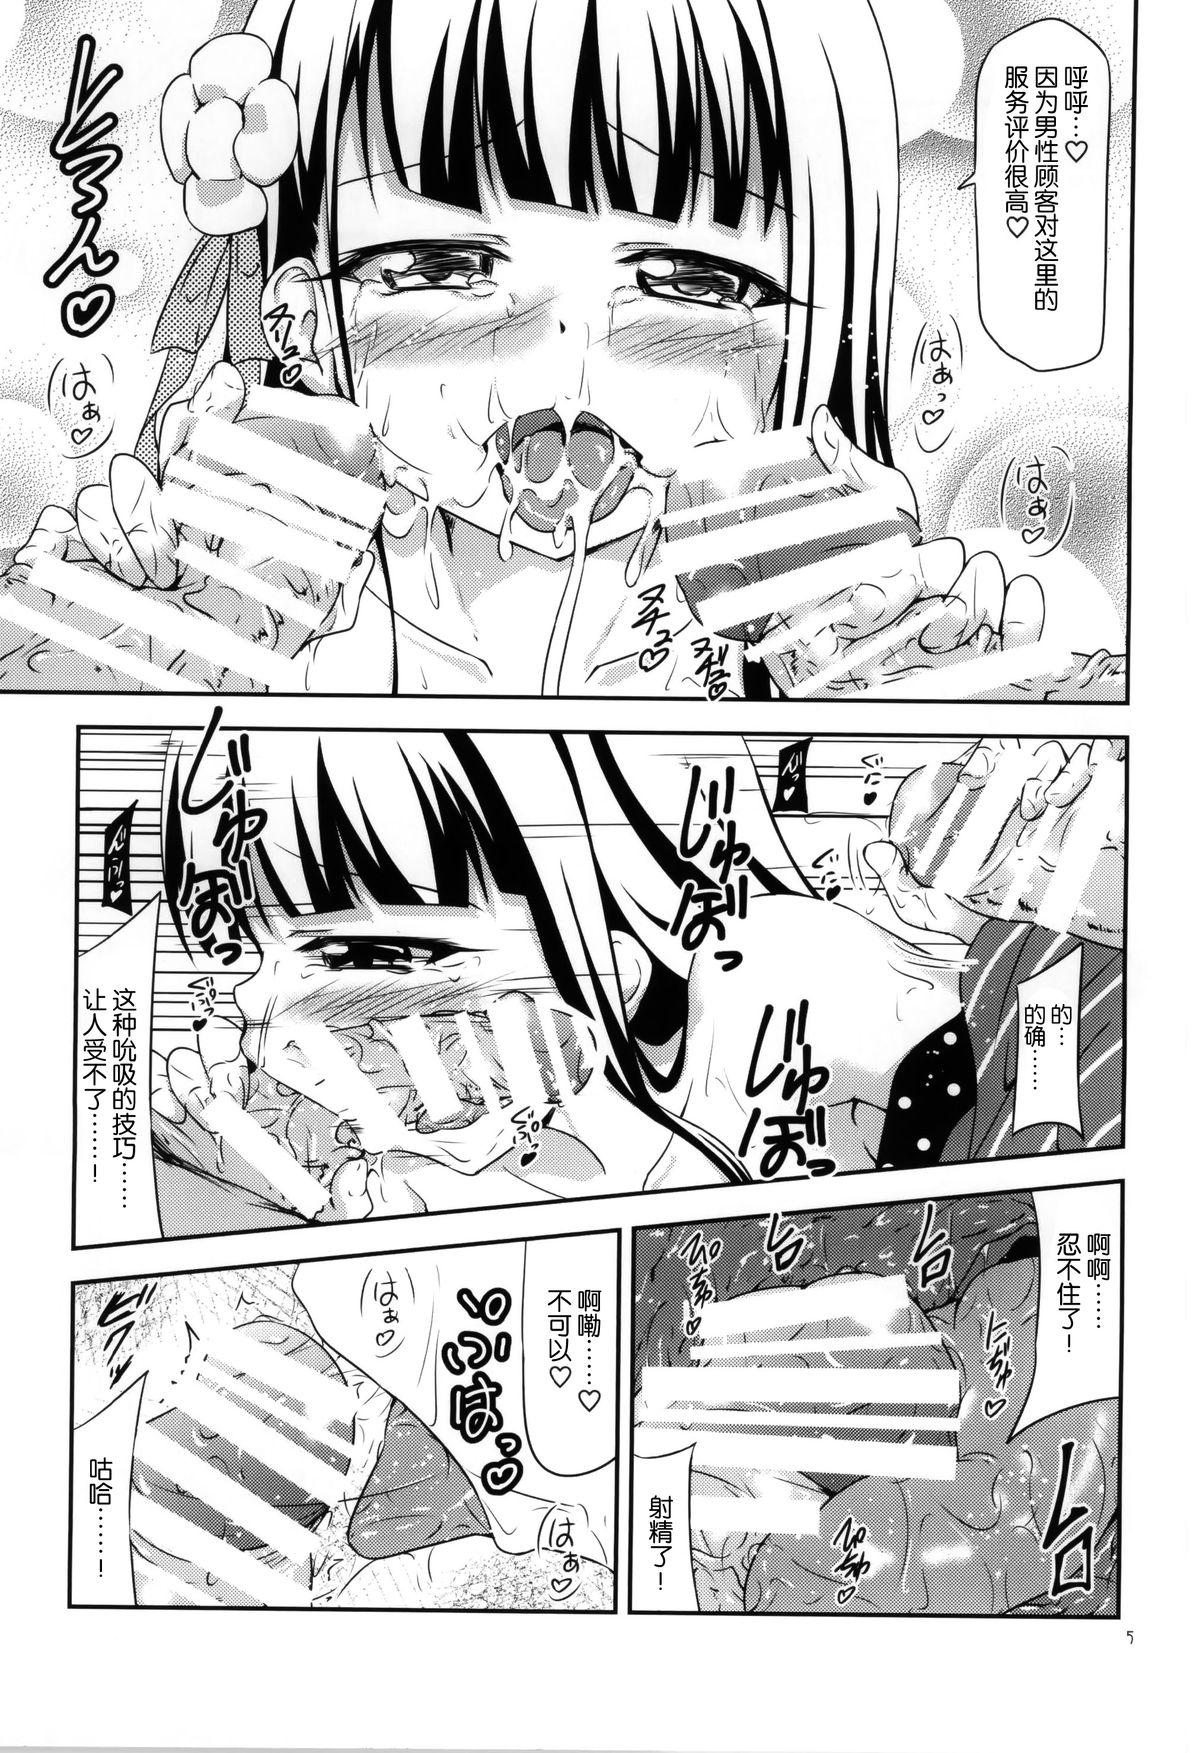 Master Amausaan no Himitsu Menu - Gochuumon wa usagi desu ka Gritona - Page 5